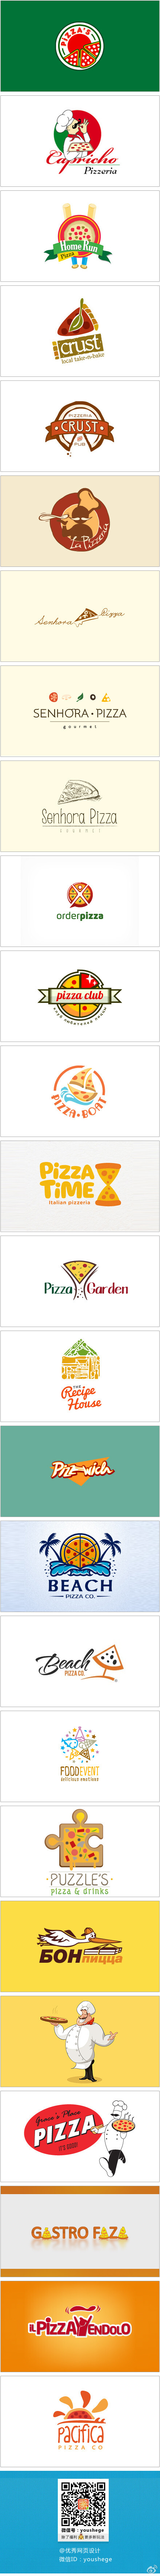 【早安Logo！一组披萨元素的Logo设计】@啧潴要穷游四方哈哈 更多创意Logo请戳→http://t.cn/zTzjpDx